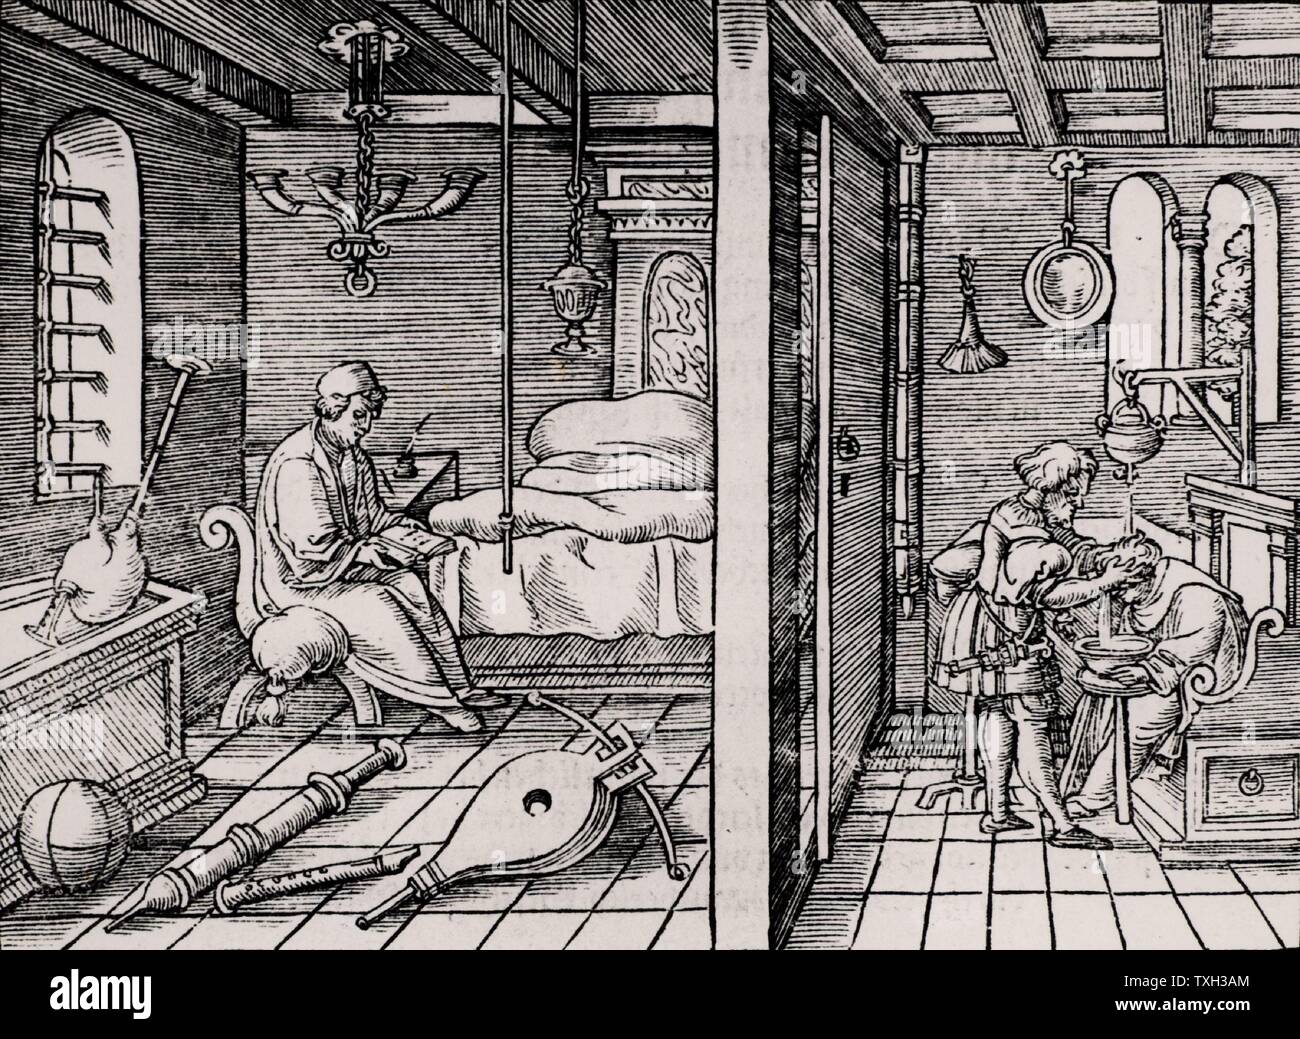 Ctesibius (Ktesibius) de Alejandría (285-222 .), matemático e inventor  griego que estudió la neumática. A la izquierda Ctesibius sienta en su  habitación rodeado por objetos que estudia, mostrando su interés por el